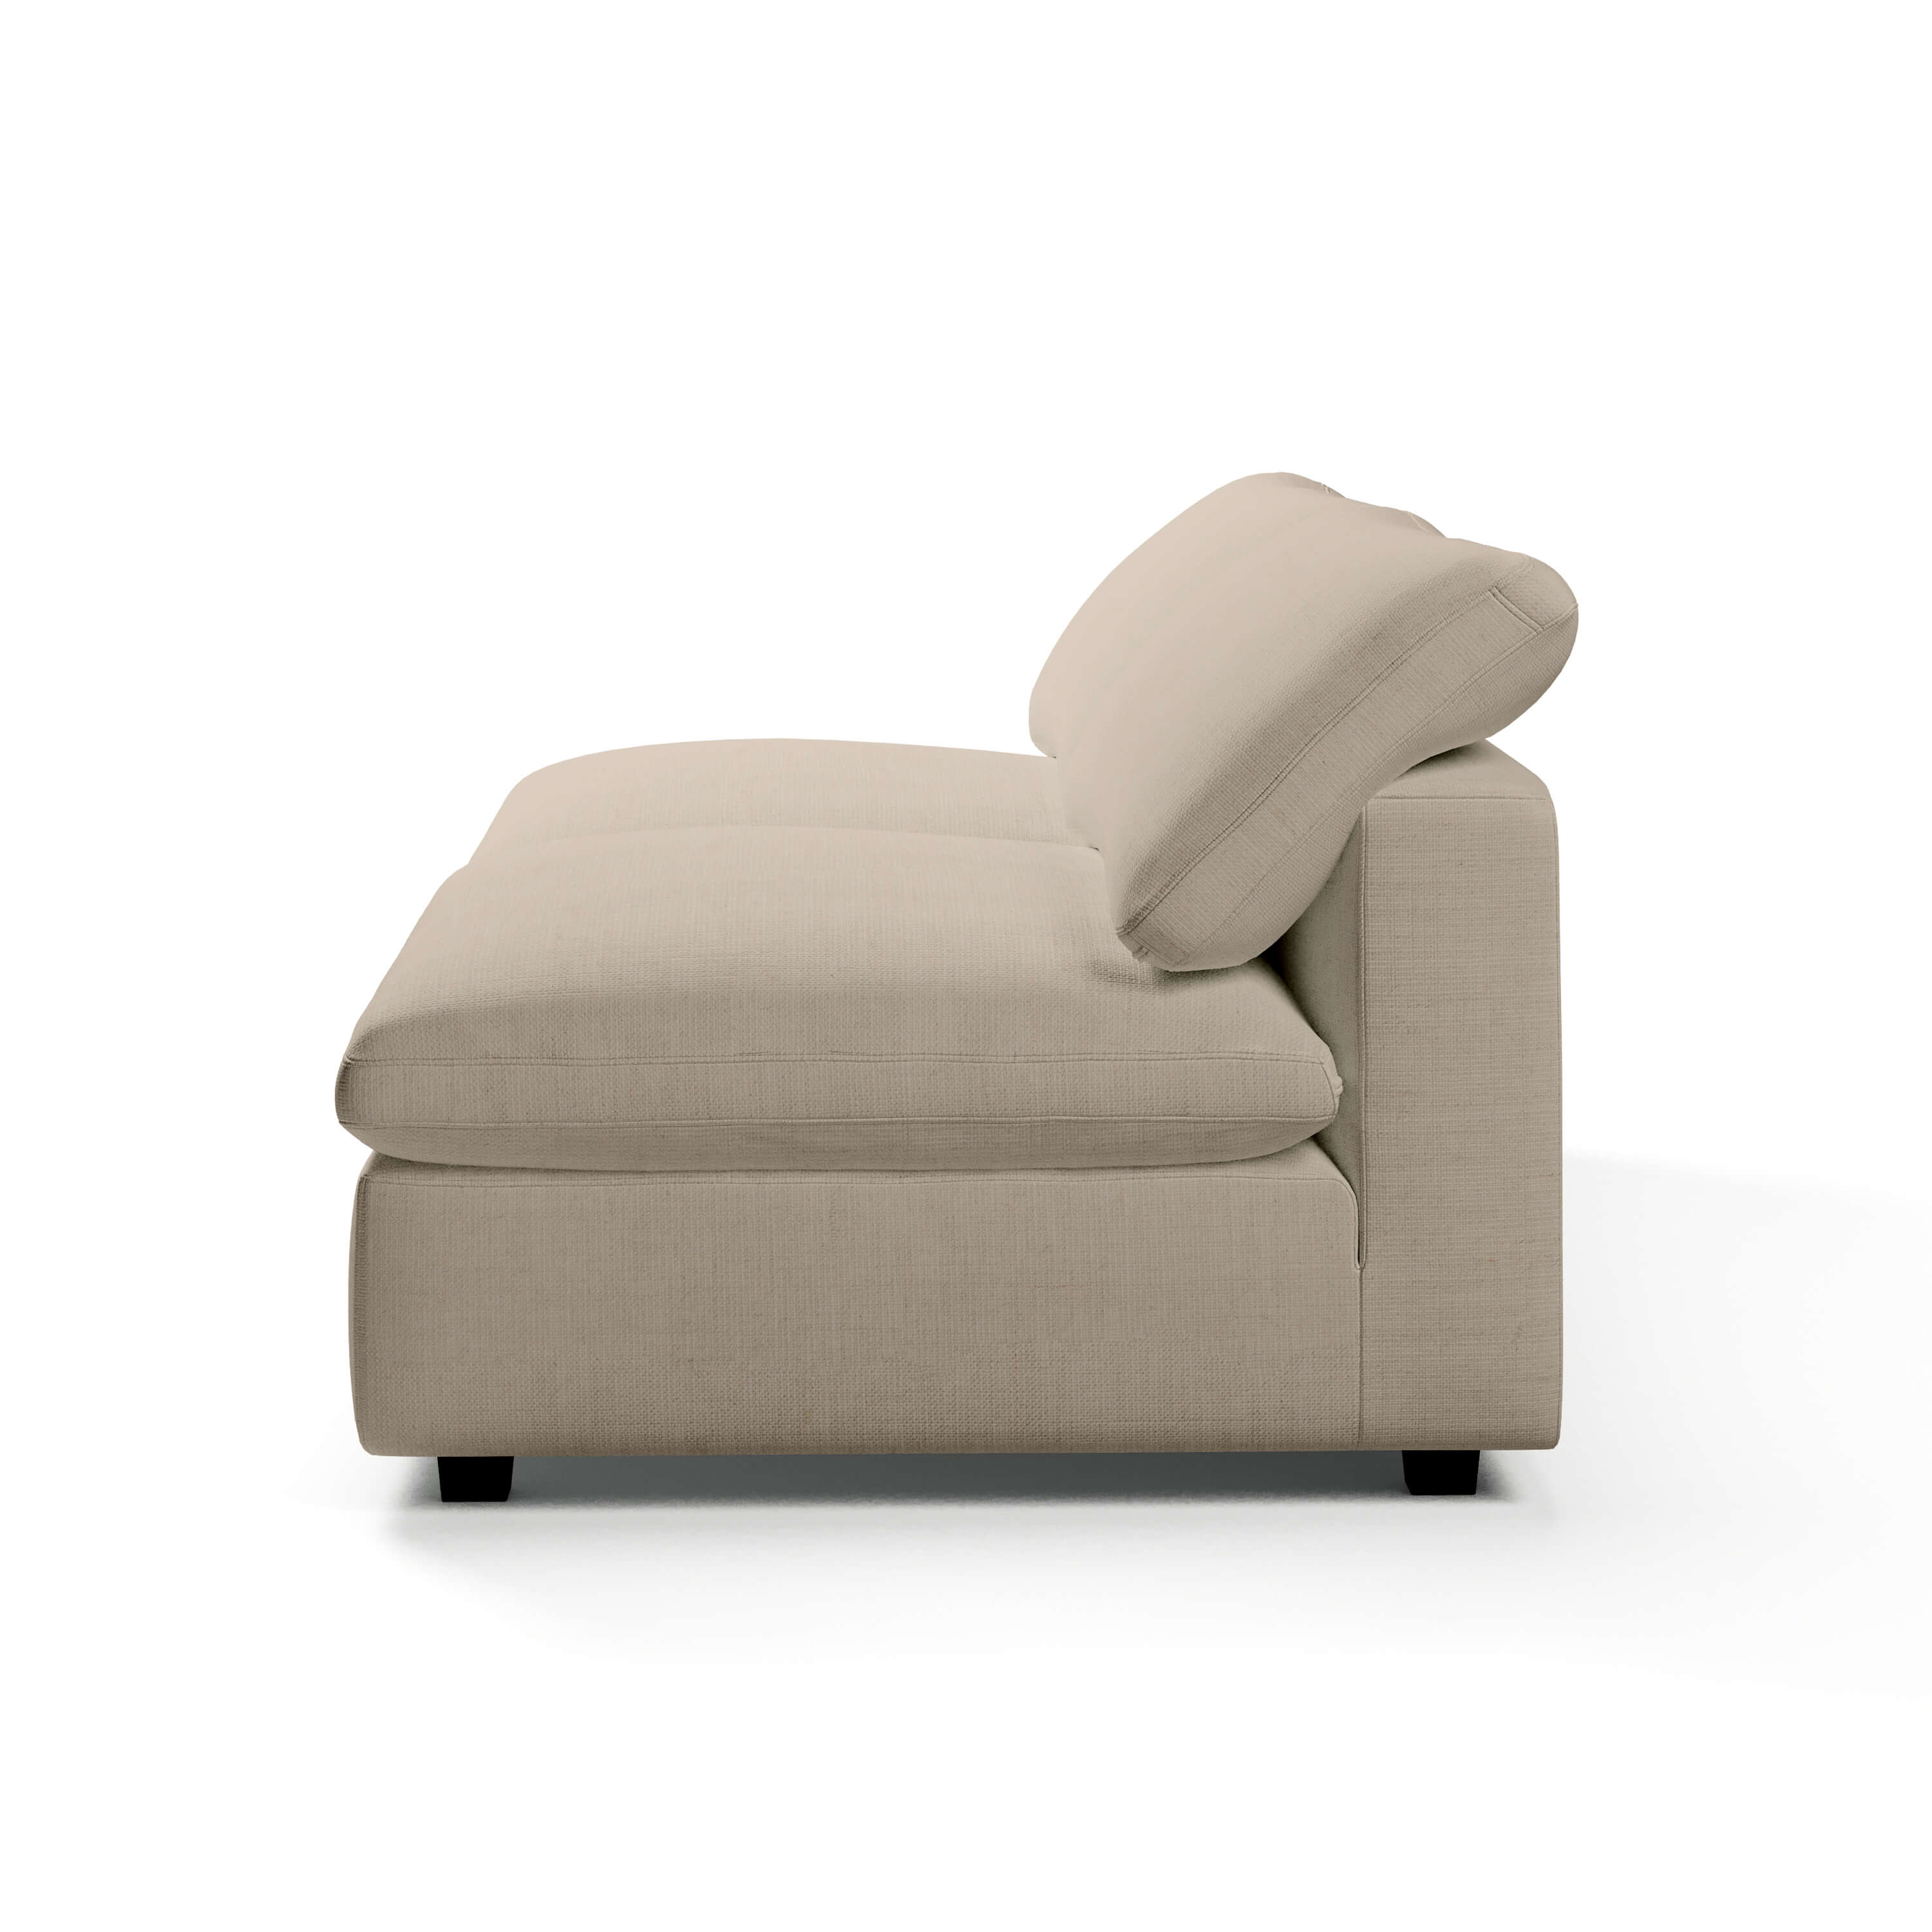 Comfy Modular Sofa - 2-Seater Armless